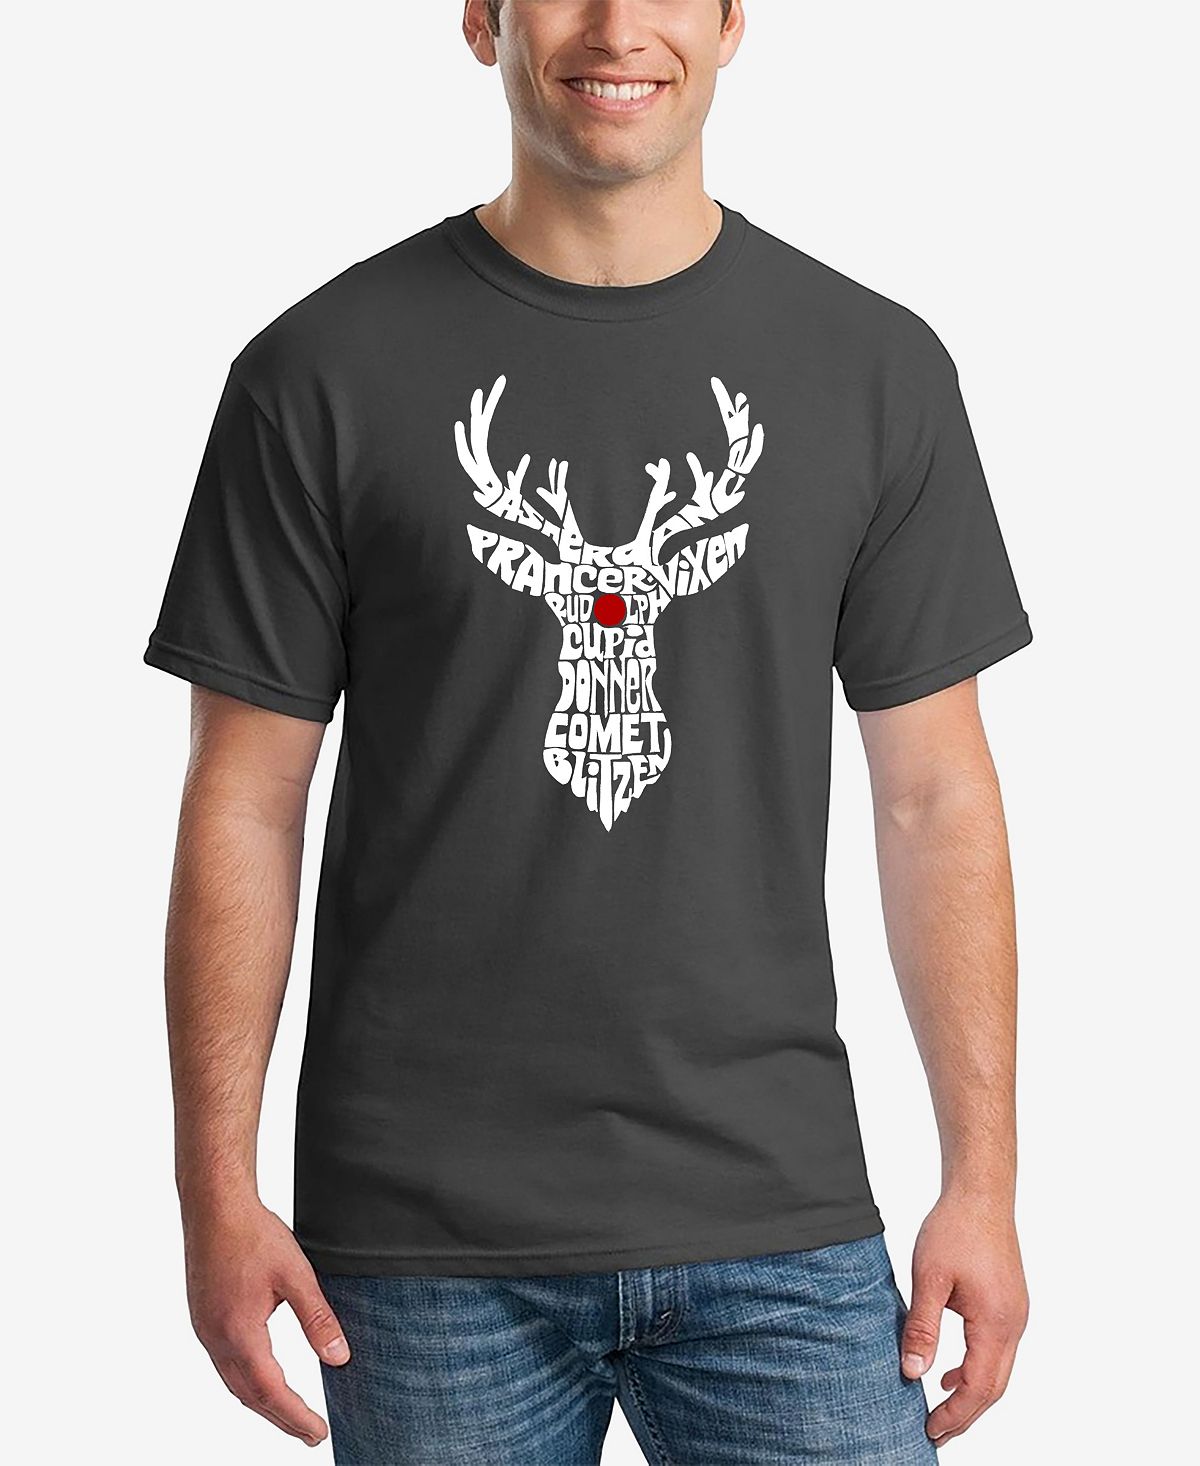 Мужская футболка с коротким рукавом и надписью santa's reindeer word art LA Pop Art, темно-серый